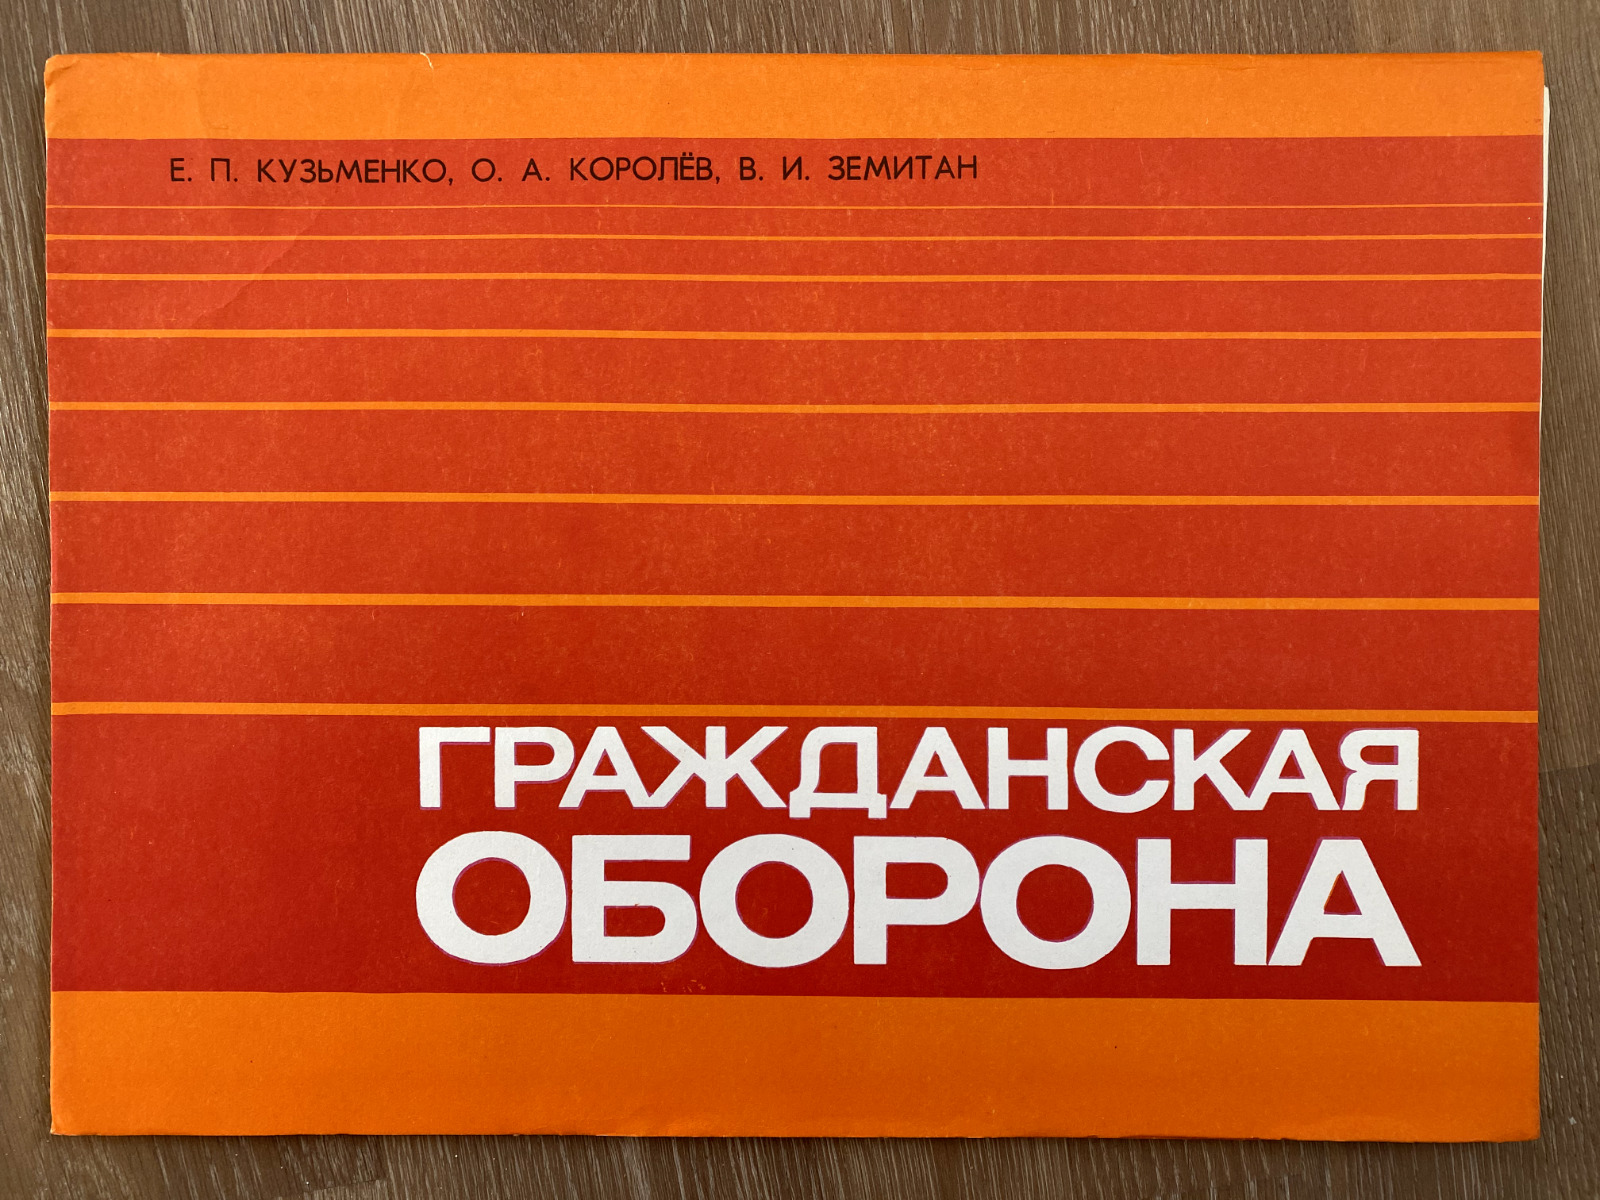 USSR Vintage Soviet Union Civil Defense Poster Set Authentic 1989 Edition # 8